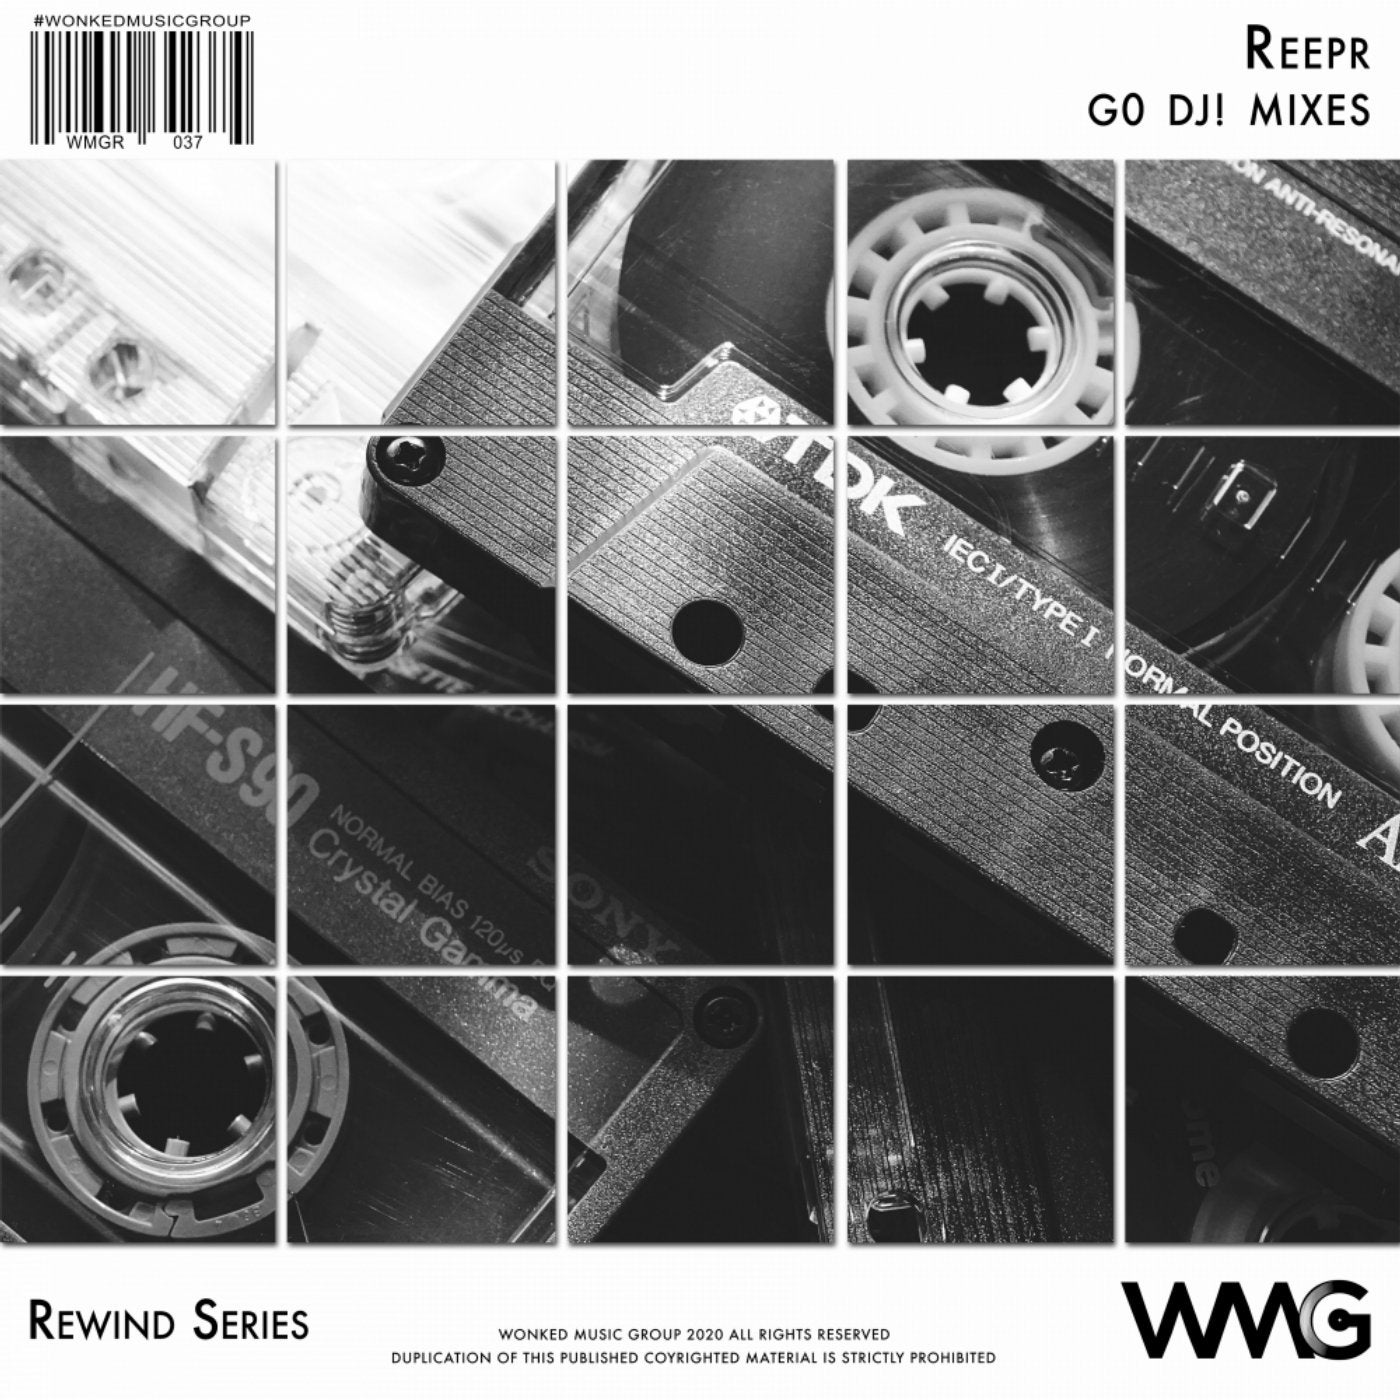 Rewind Series: ReepR - G0 DJ! Mixes